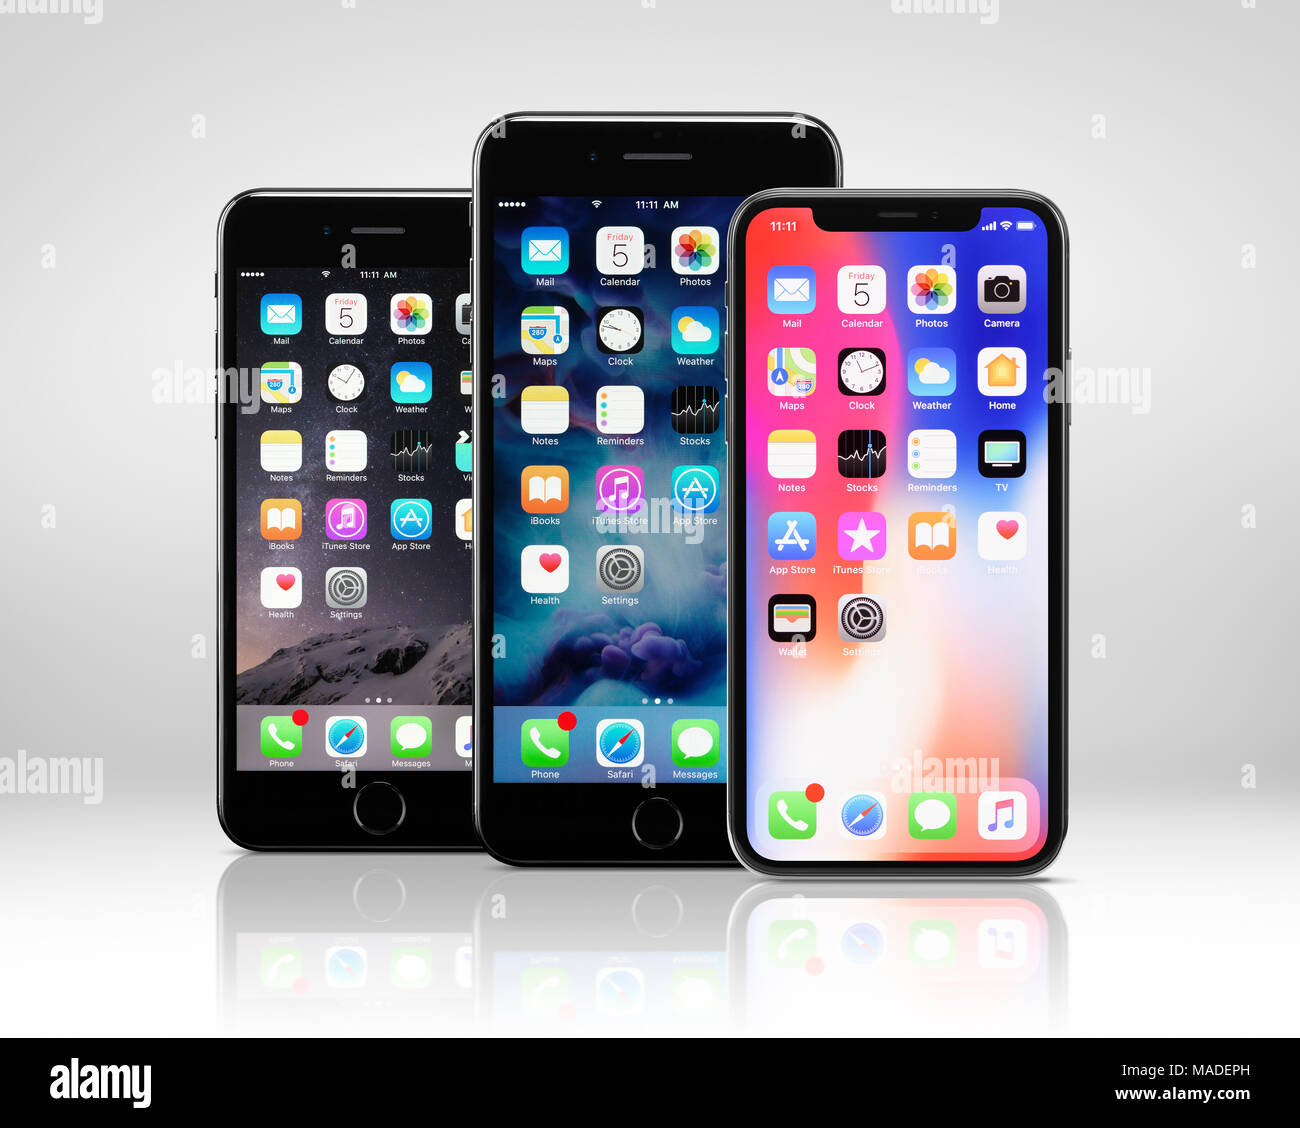 Lizenz verfügbar unter MaximImages.com - Apple iPhone X rechts, Smartphone mit großem Bildschirm und iPhone 8, 8 plus, Phablet in der Mitte Stockfoto